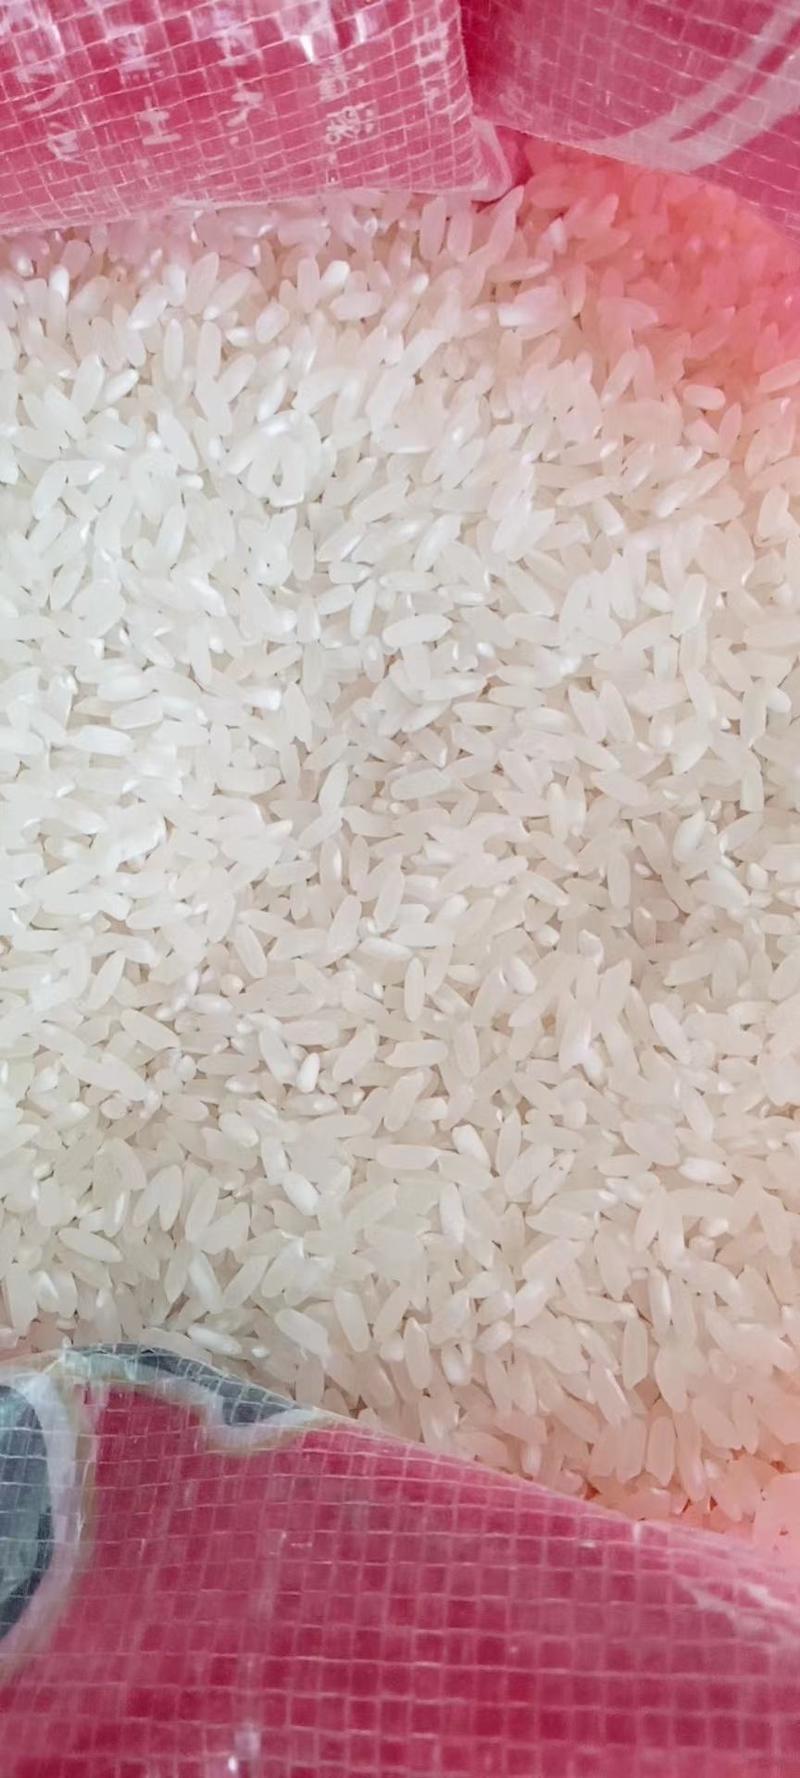 稻花香正宗的五常大米口感好米质有保障